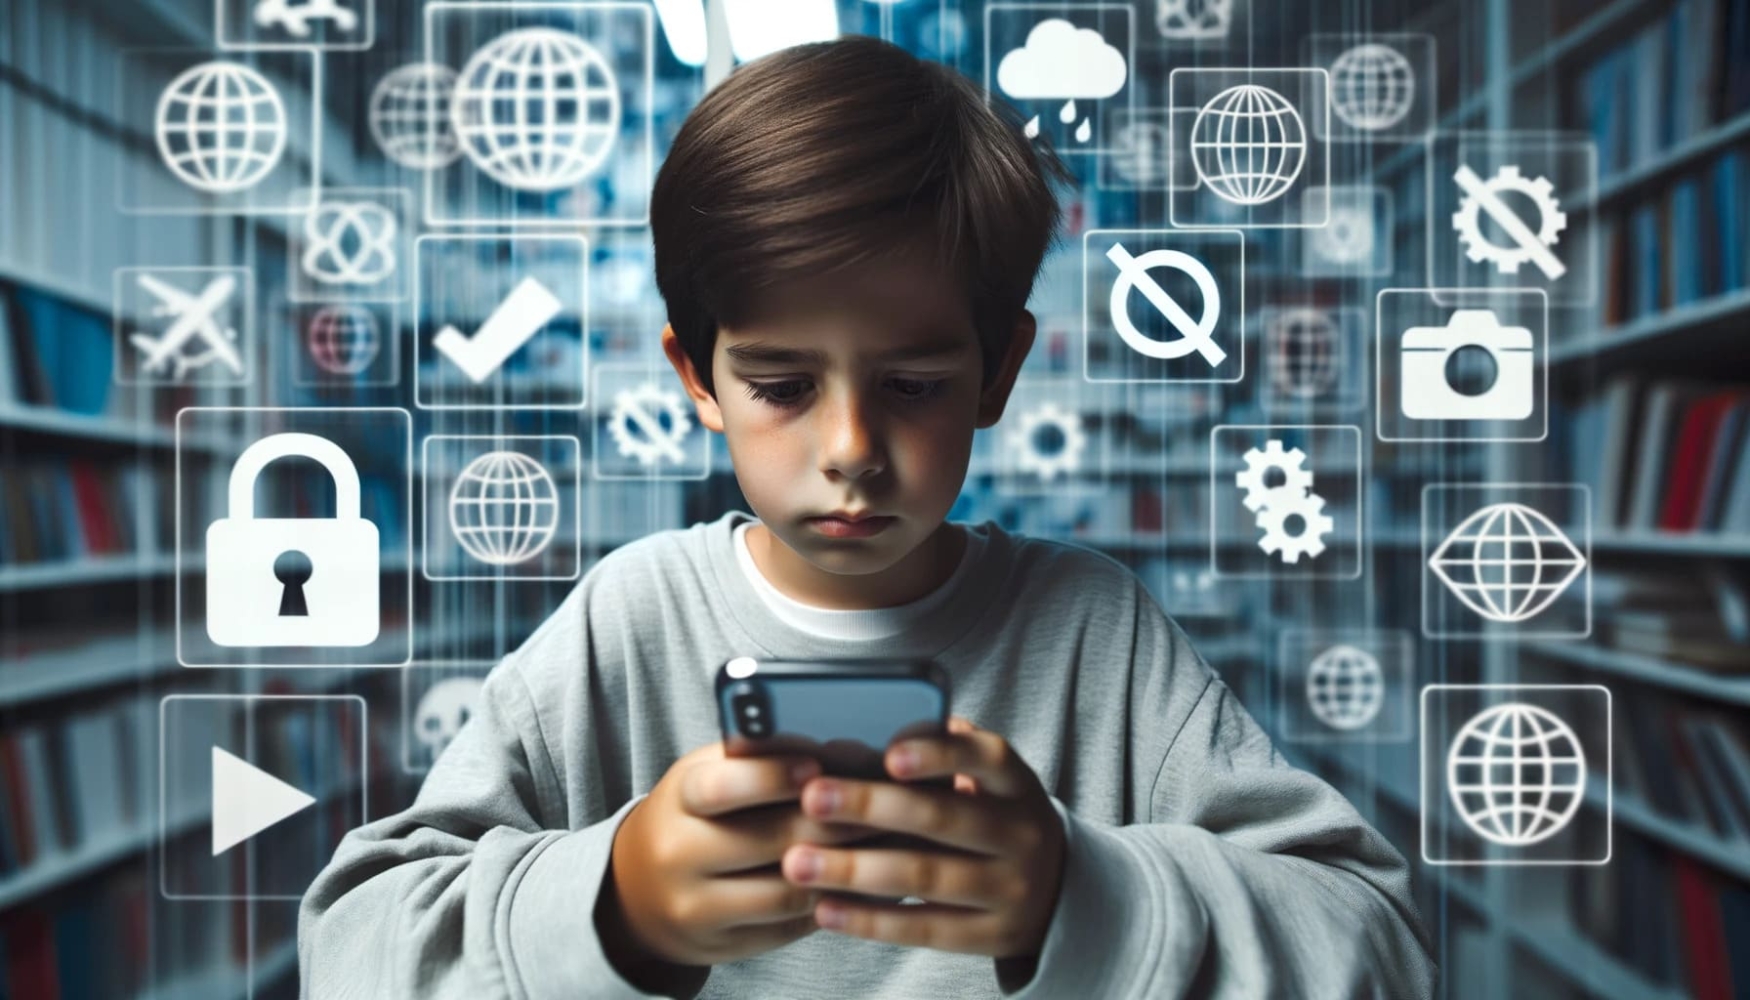 Foto eines kleinen Jungen, der aufmerksam auf ein iPhone schaut, das er in den Händen hält. Hinter ihm zeigt eine durchsichtige digitale Wand verschiedene Website-Logos, von denen einige mit einem durchgestrichenen Zeichen versehen sind, was bedeutet, dass sie gesperrt sind.